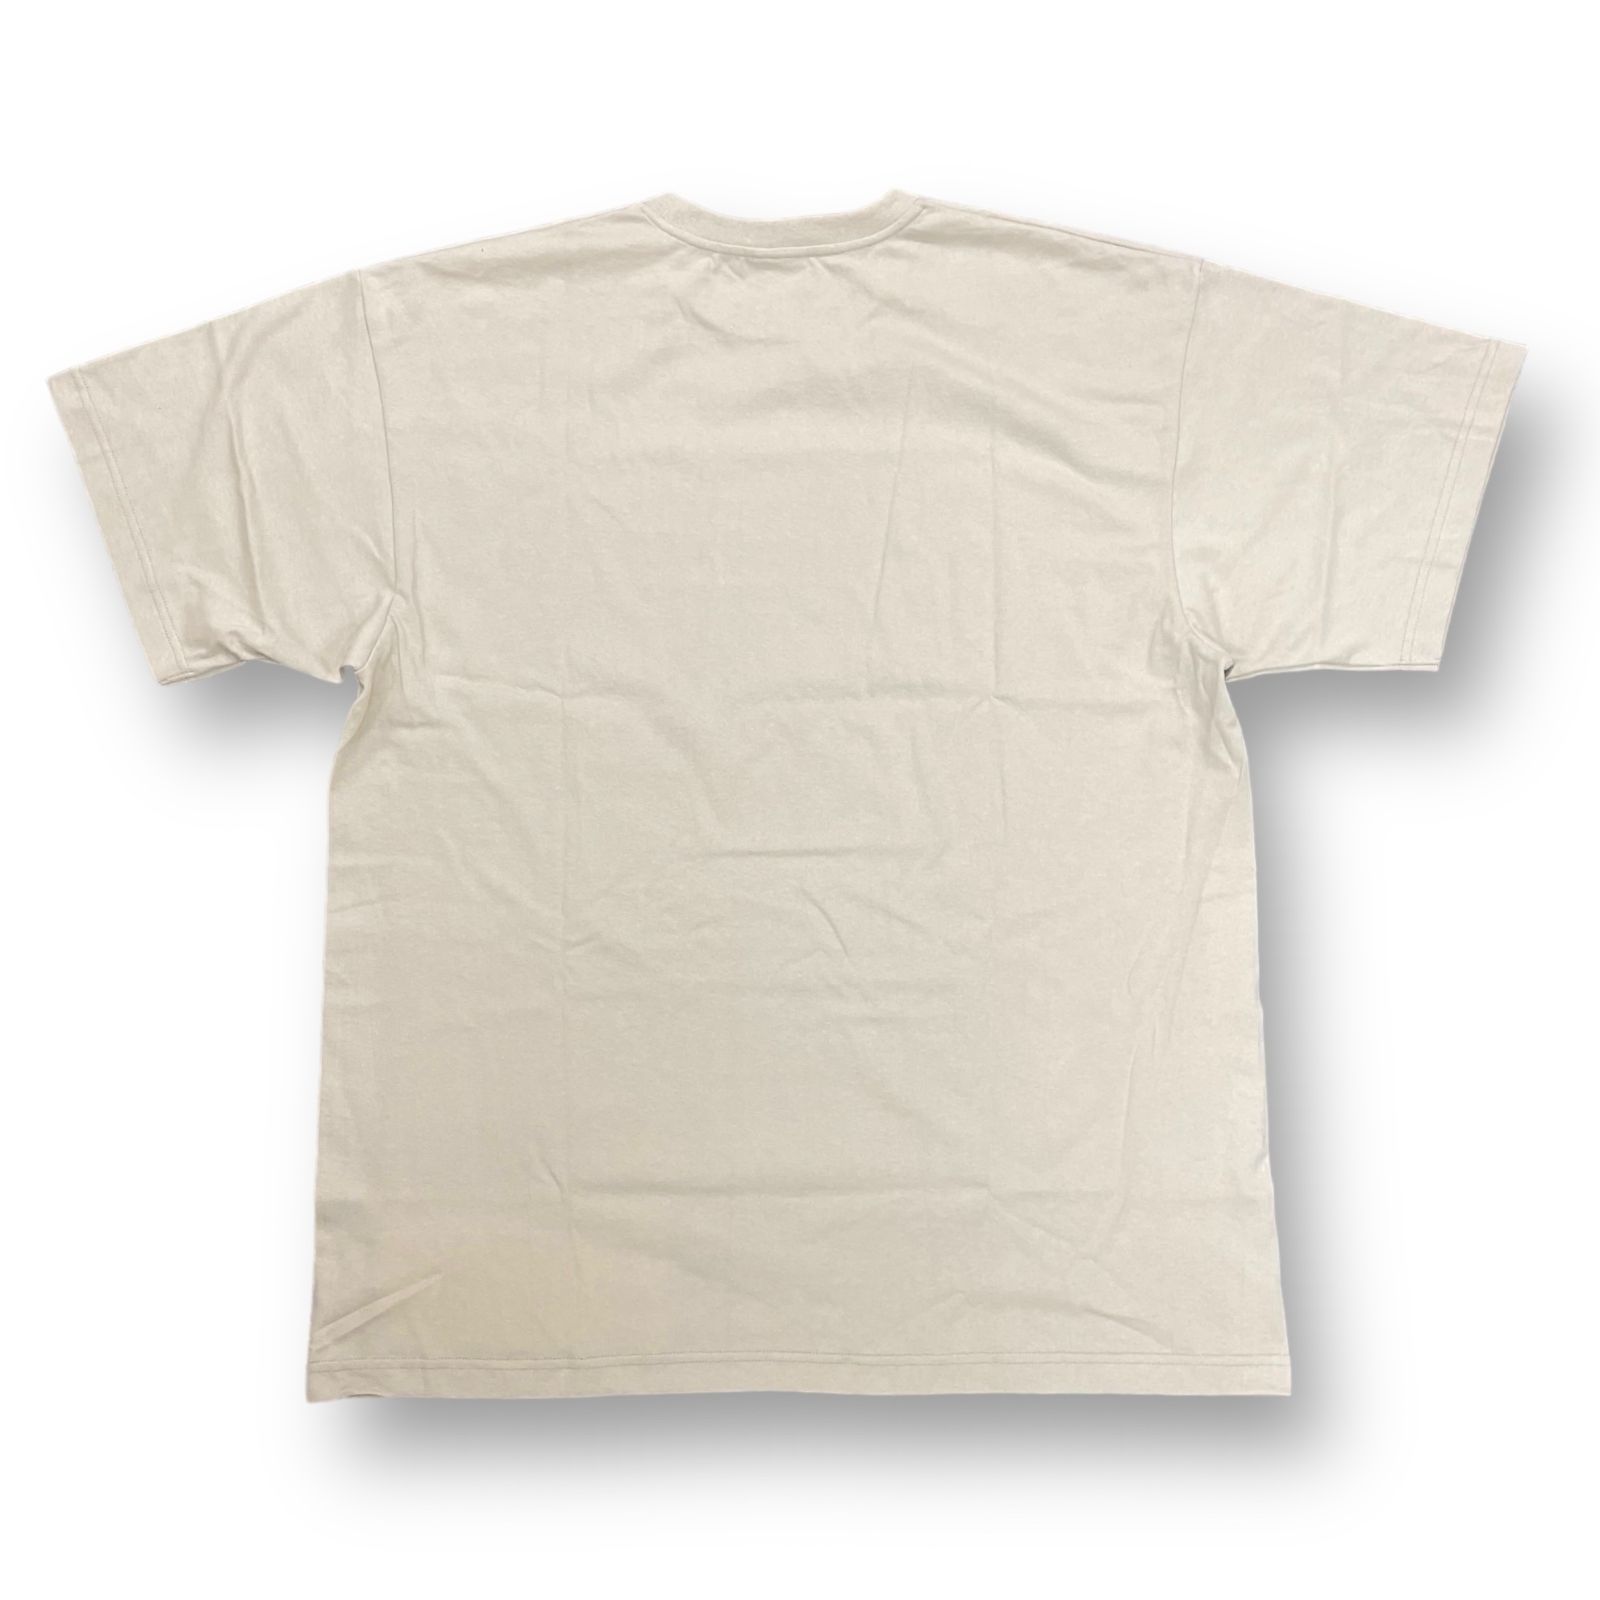 メンズWTAPS ダブルタップス カレッジ ロゴ Tシャツ XL ブラック